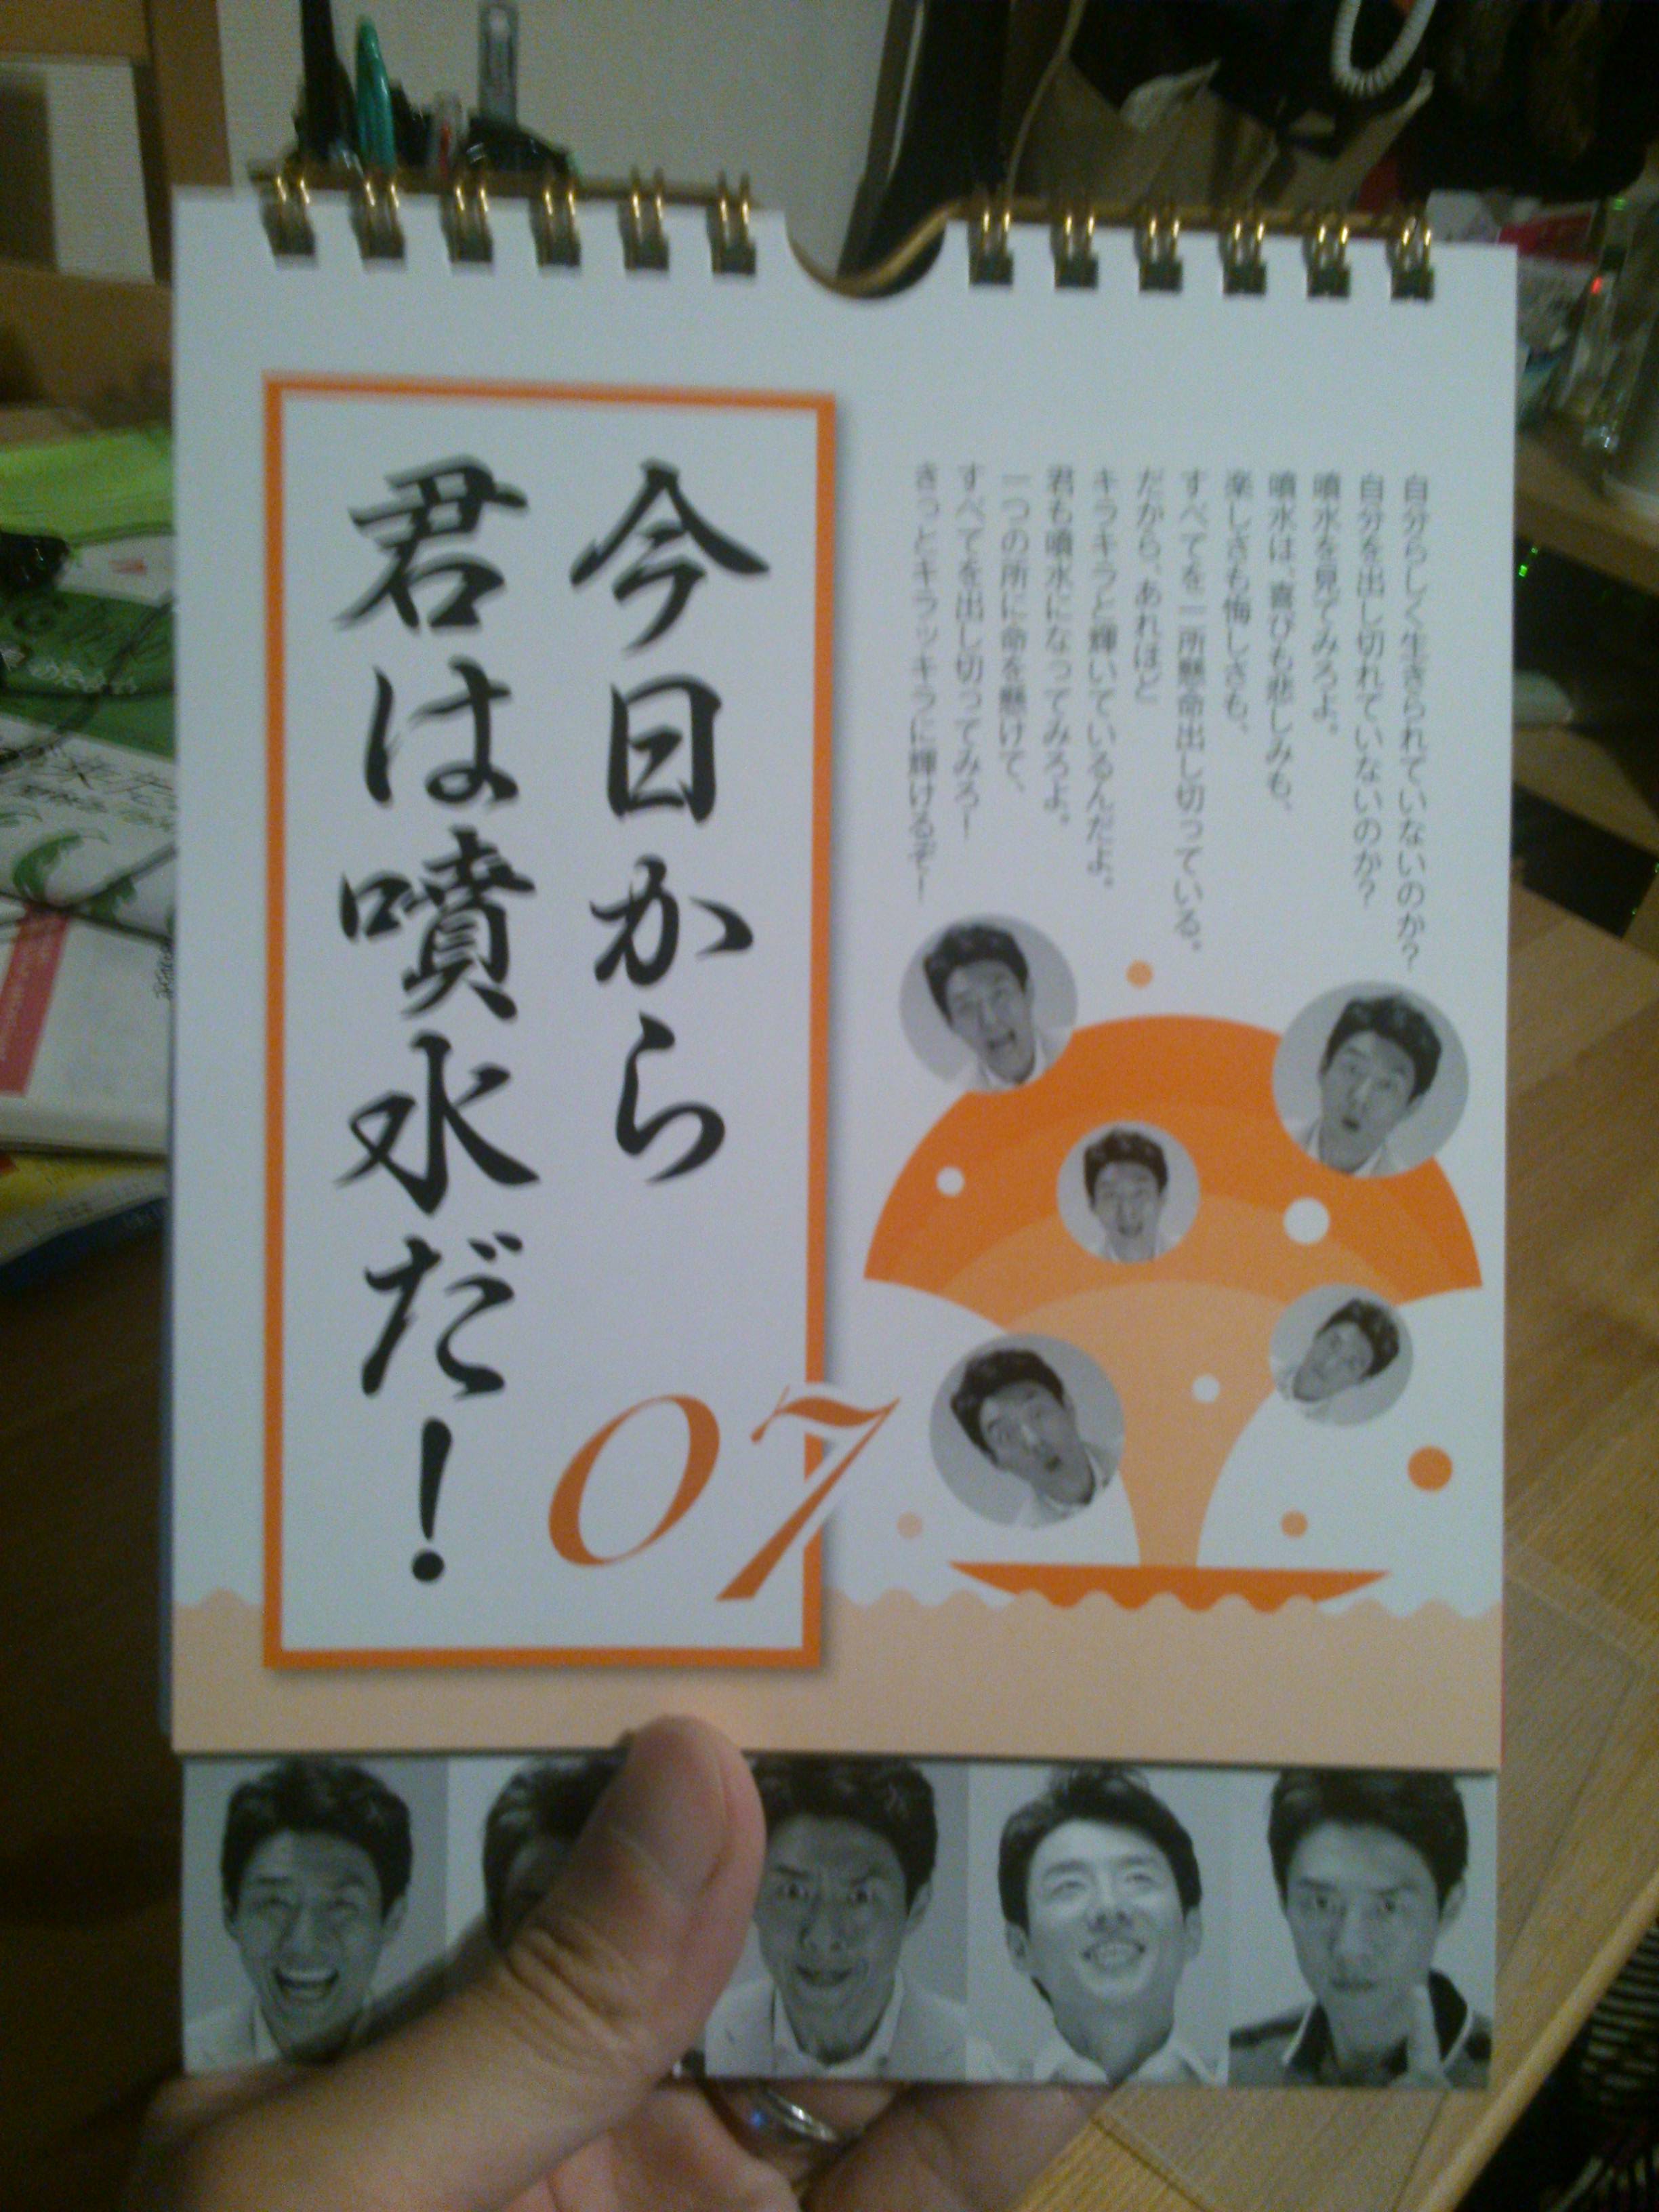 甚太郎日記 松岡修造の日めくりカレンダーがやって来た 15年7月2日 木